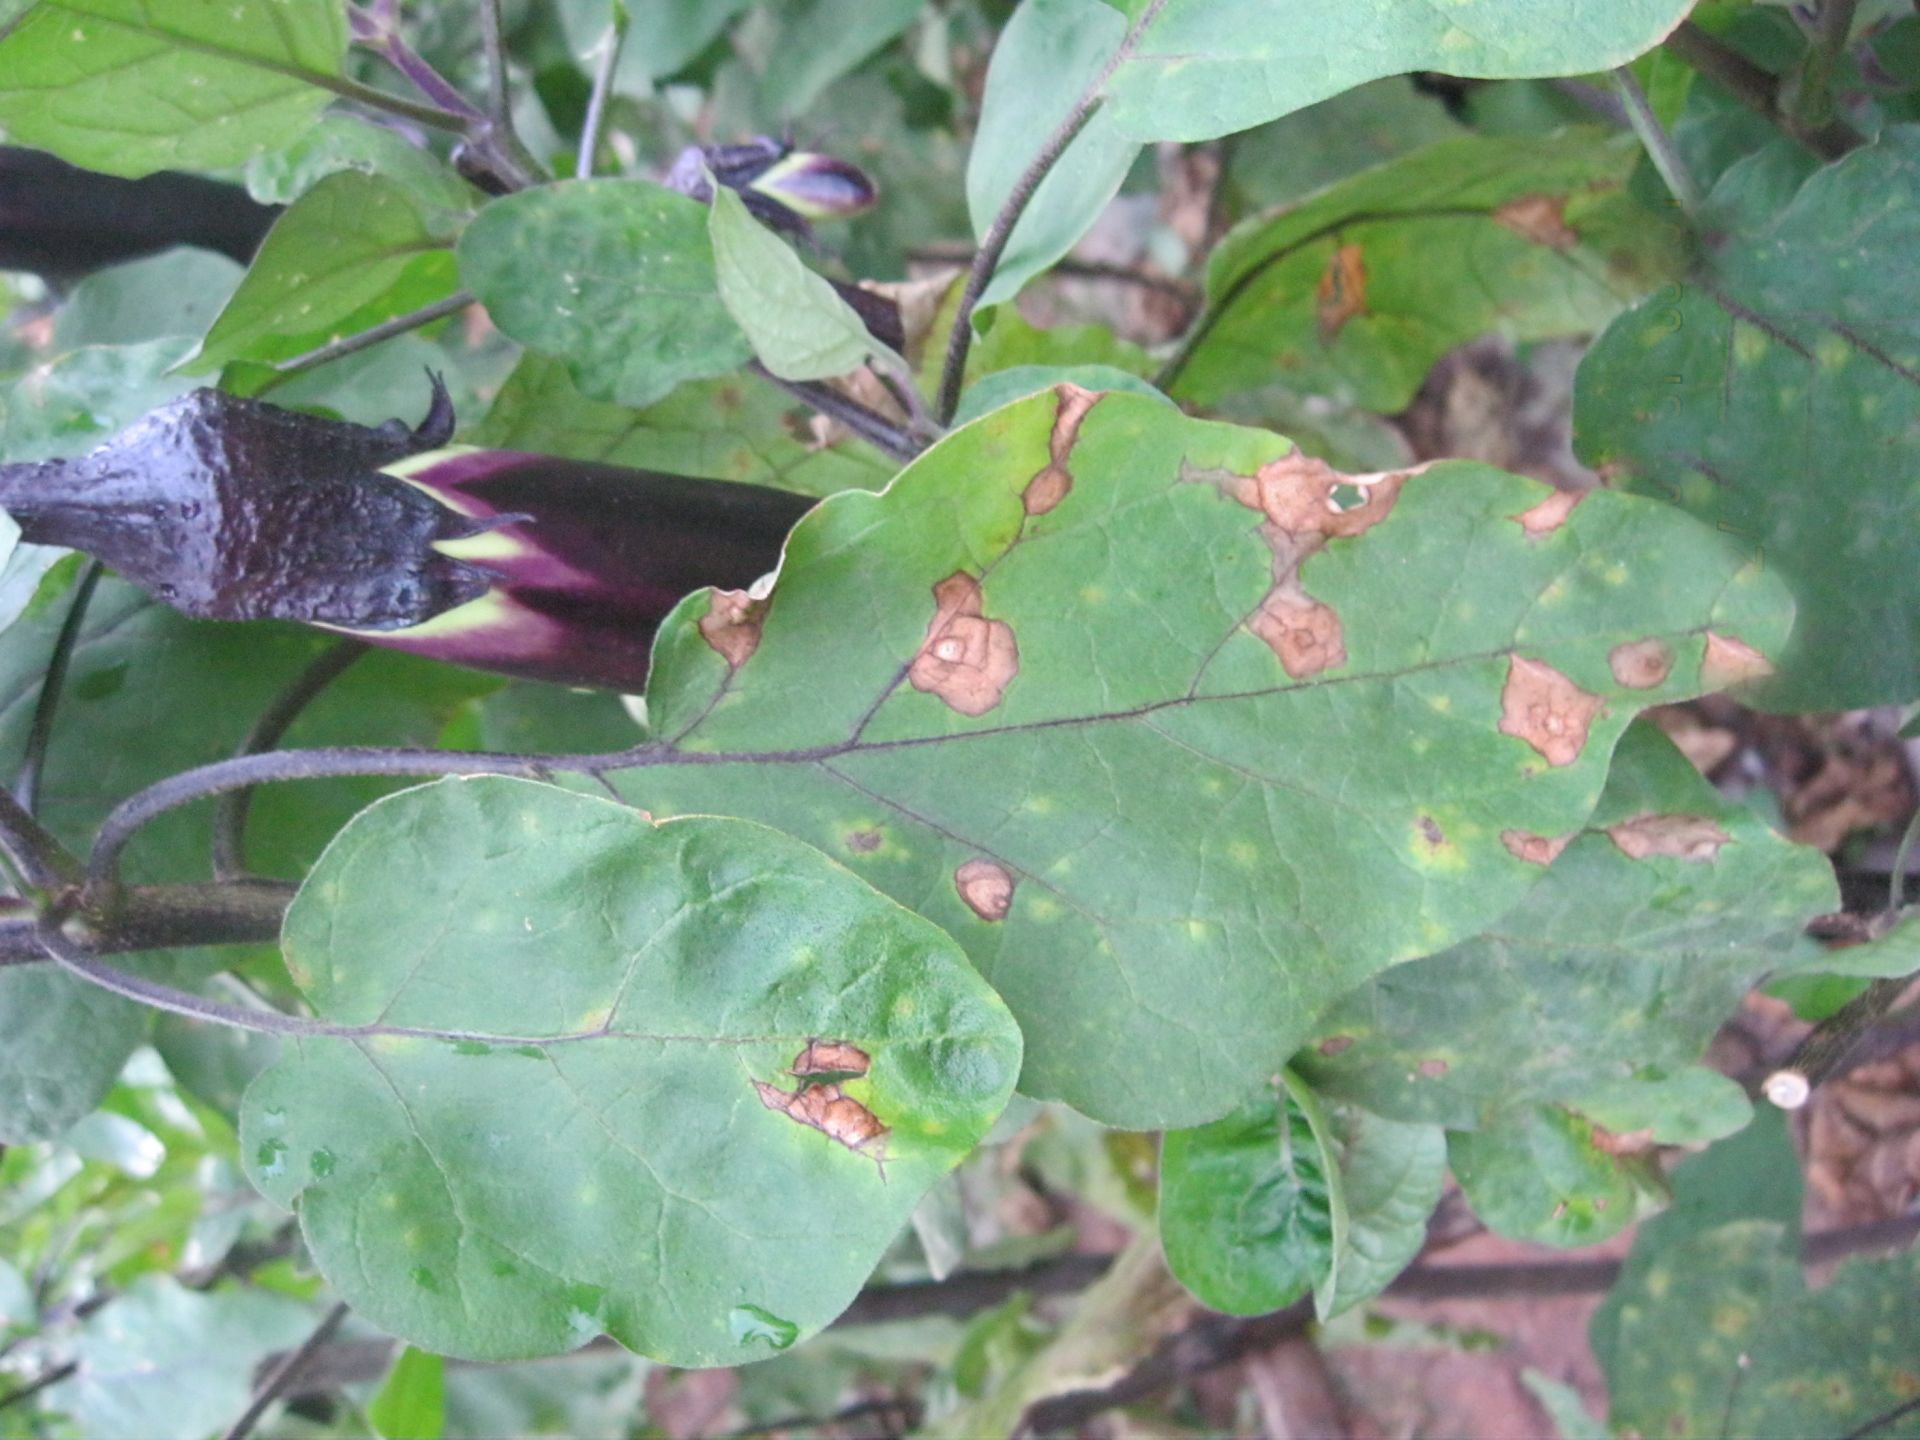 茄子叶常见病害图谱图片